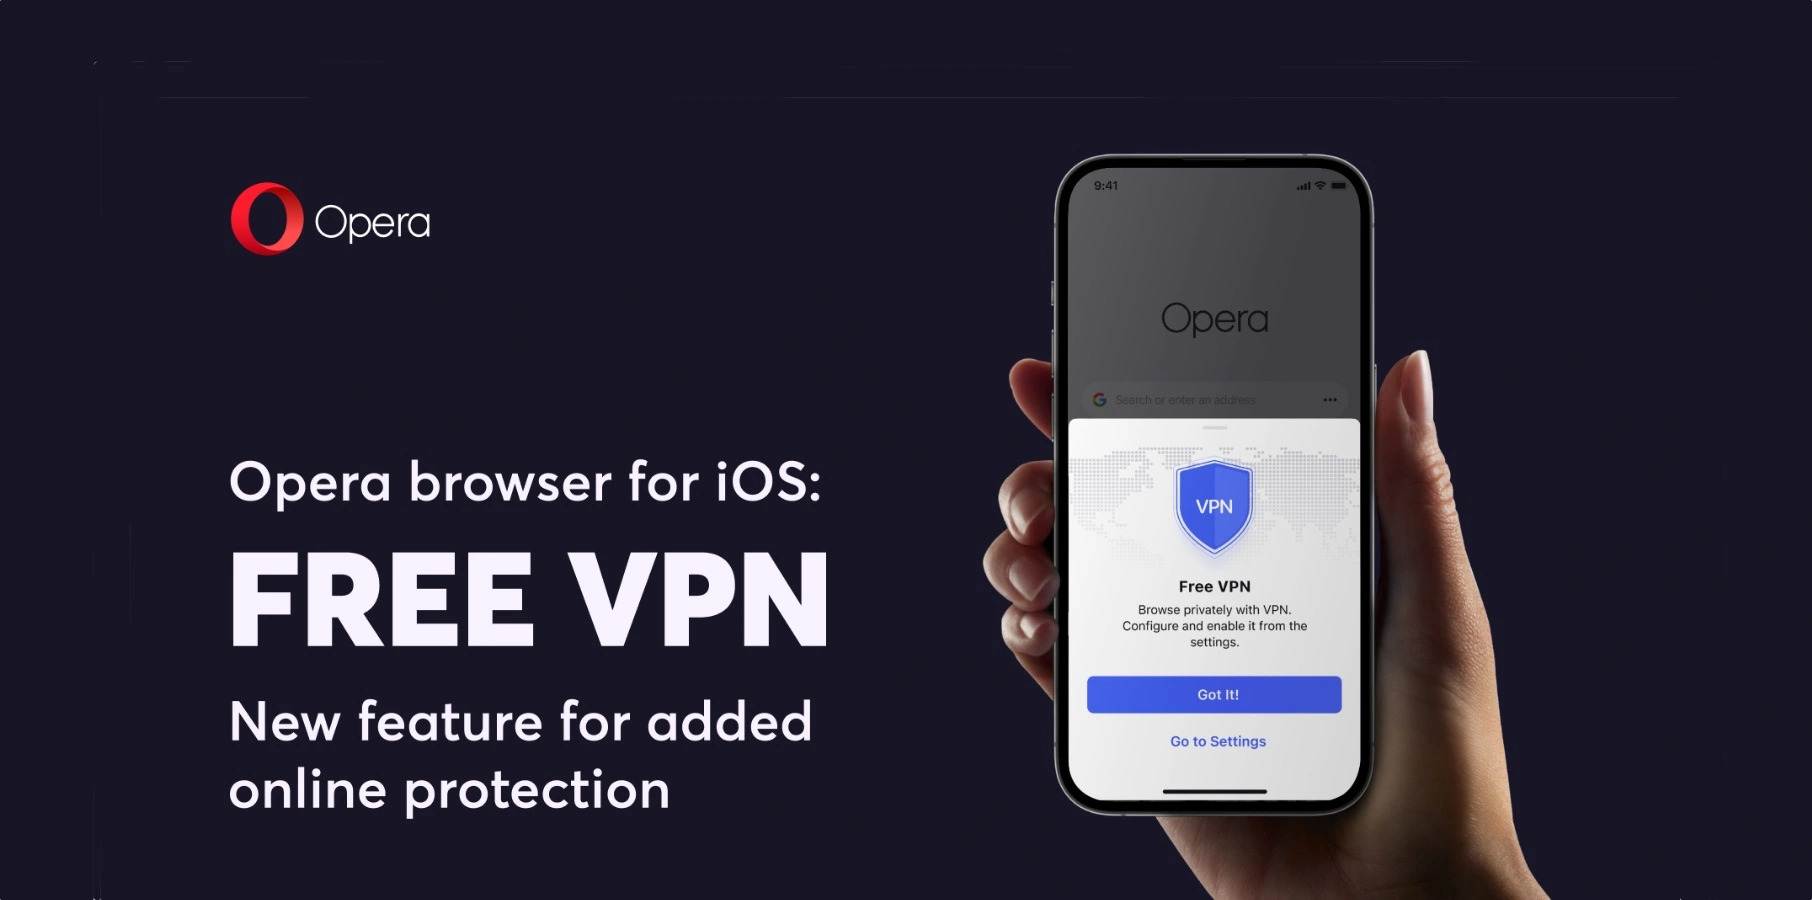 El navegador Opera para iPhone ahora incluye una VPN gratuita